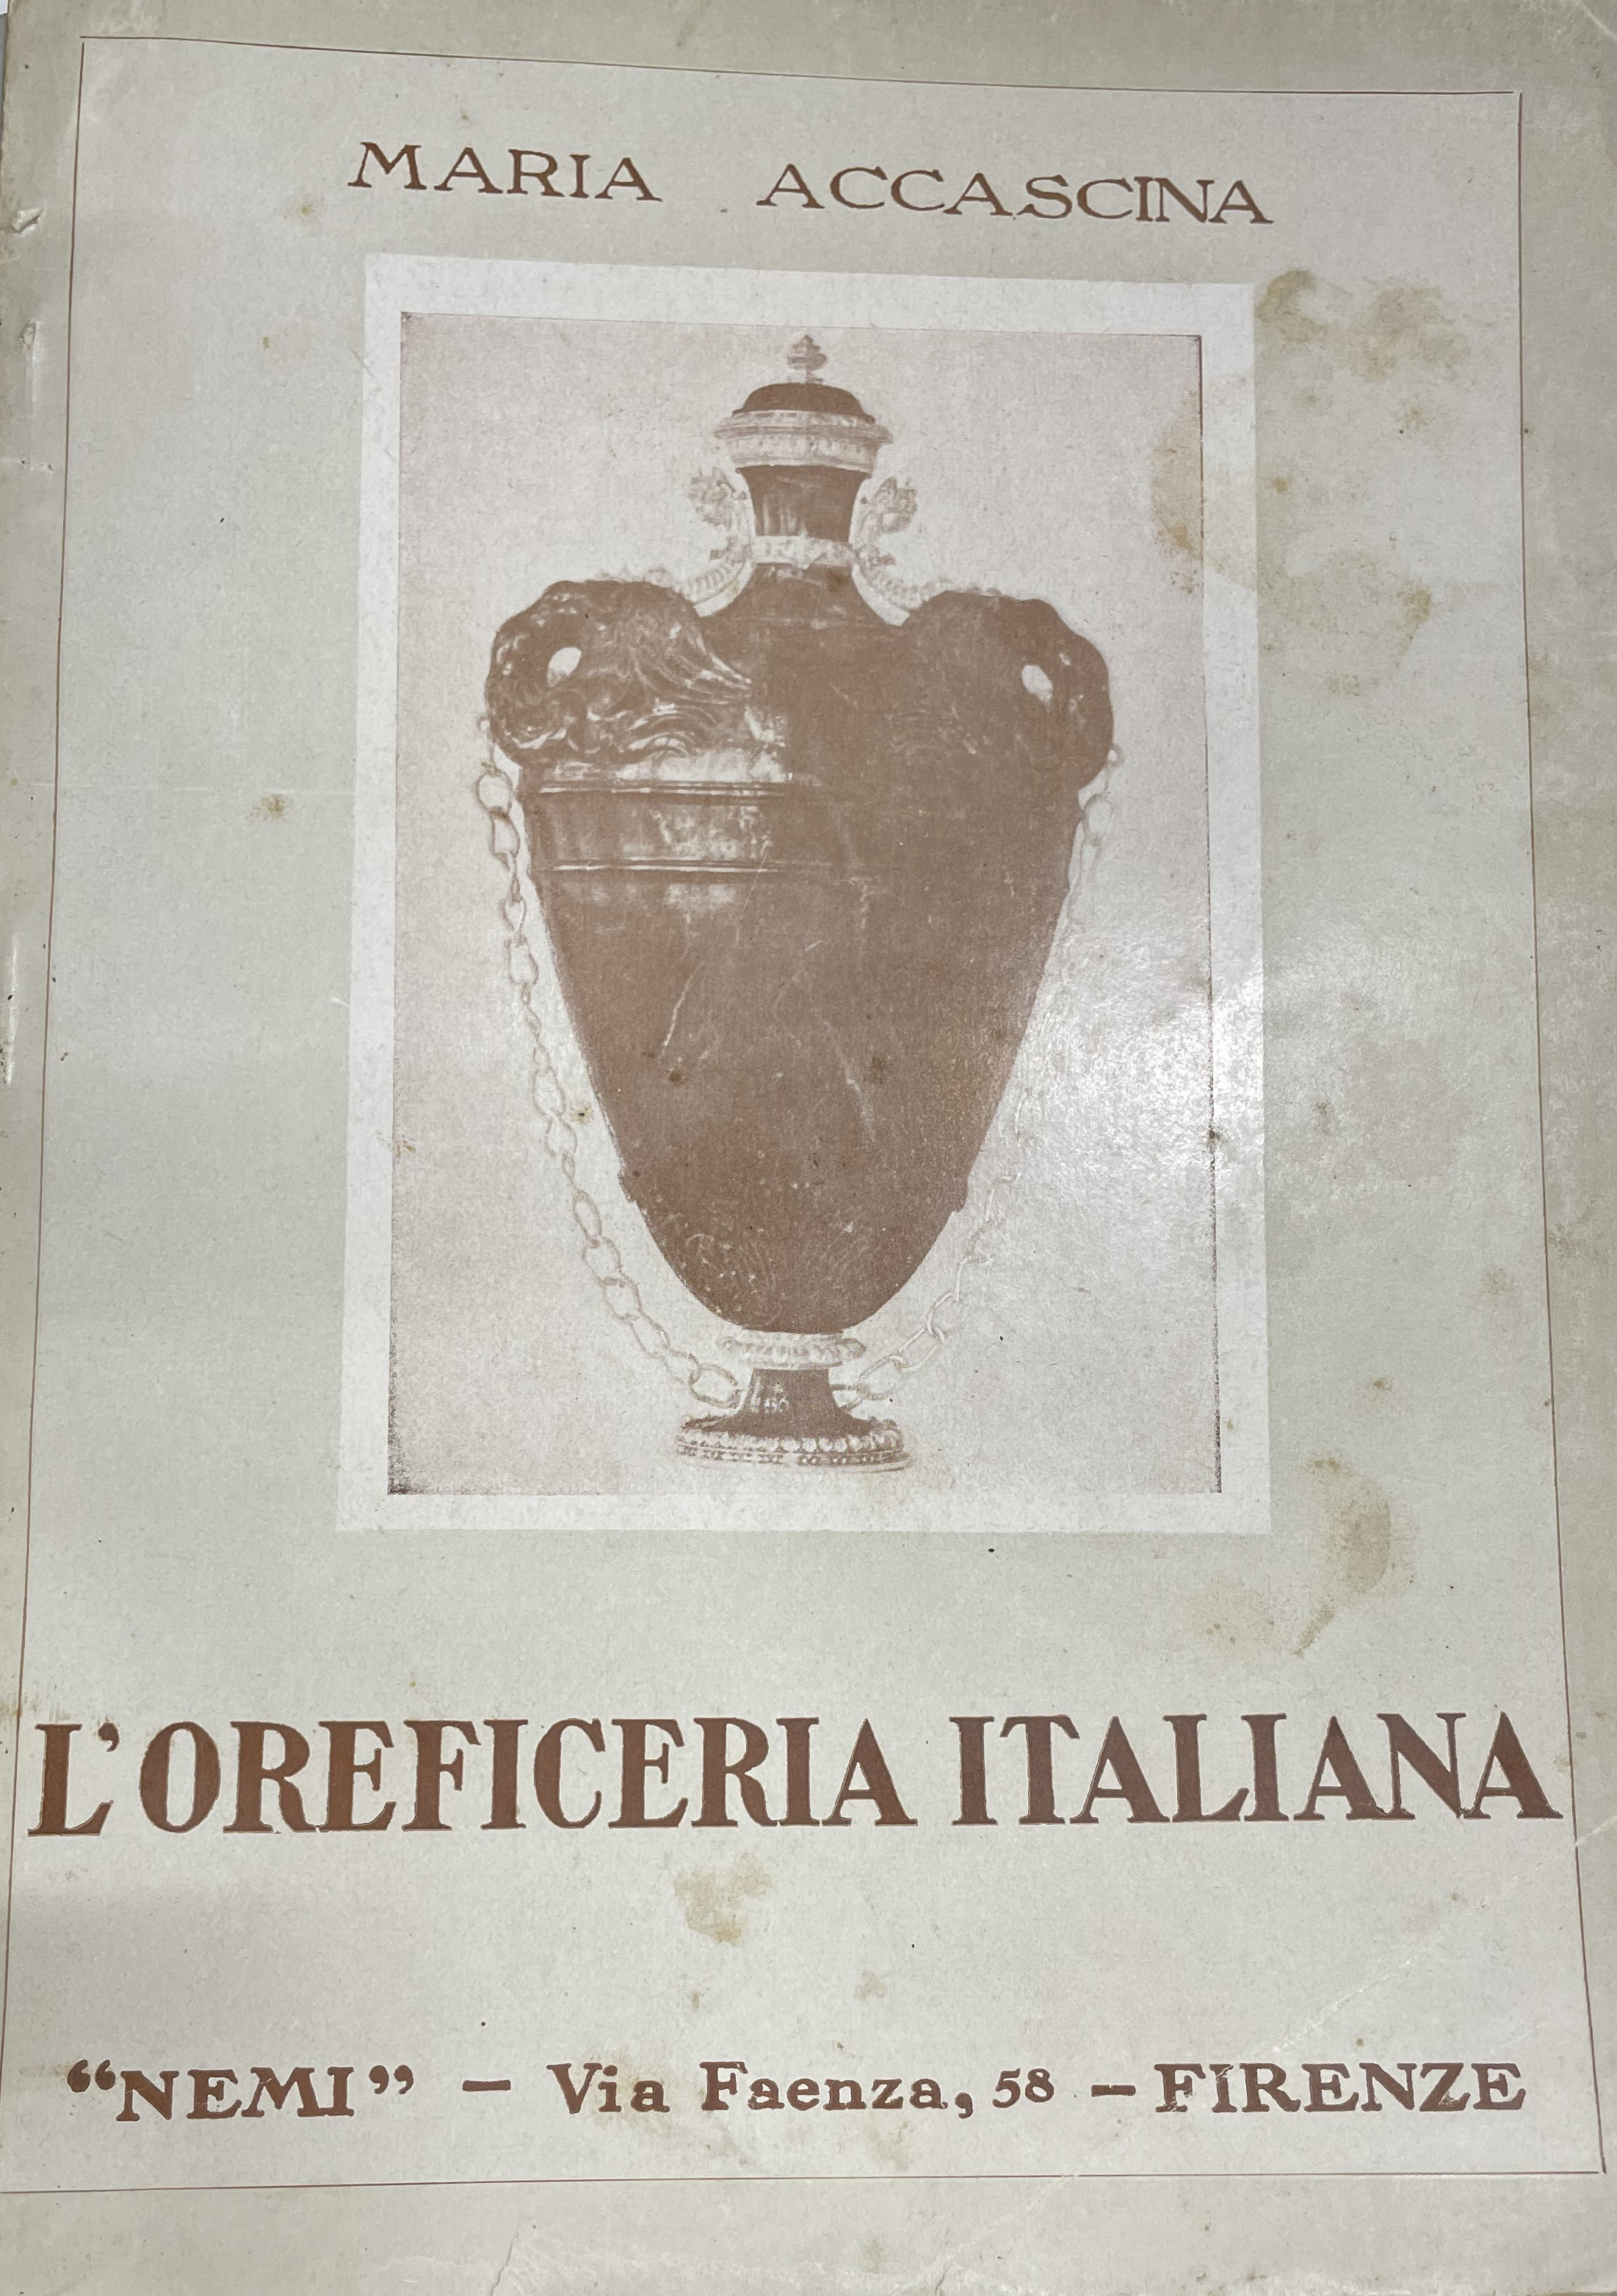 L'oreficeria italiana - [NEMI] - Zdjęcie 1 z 1